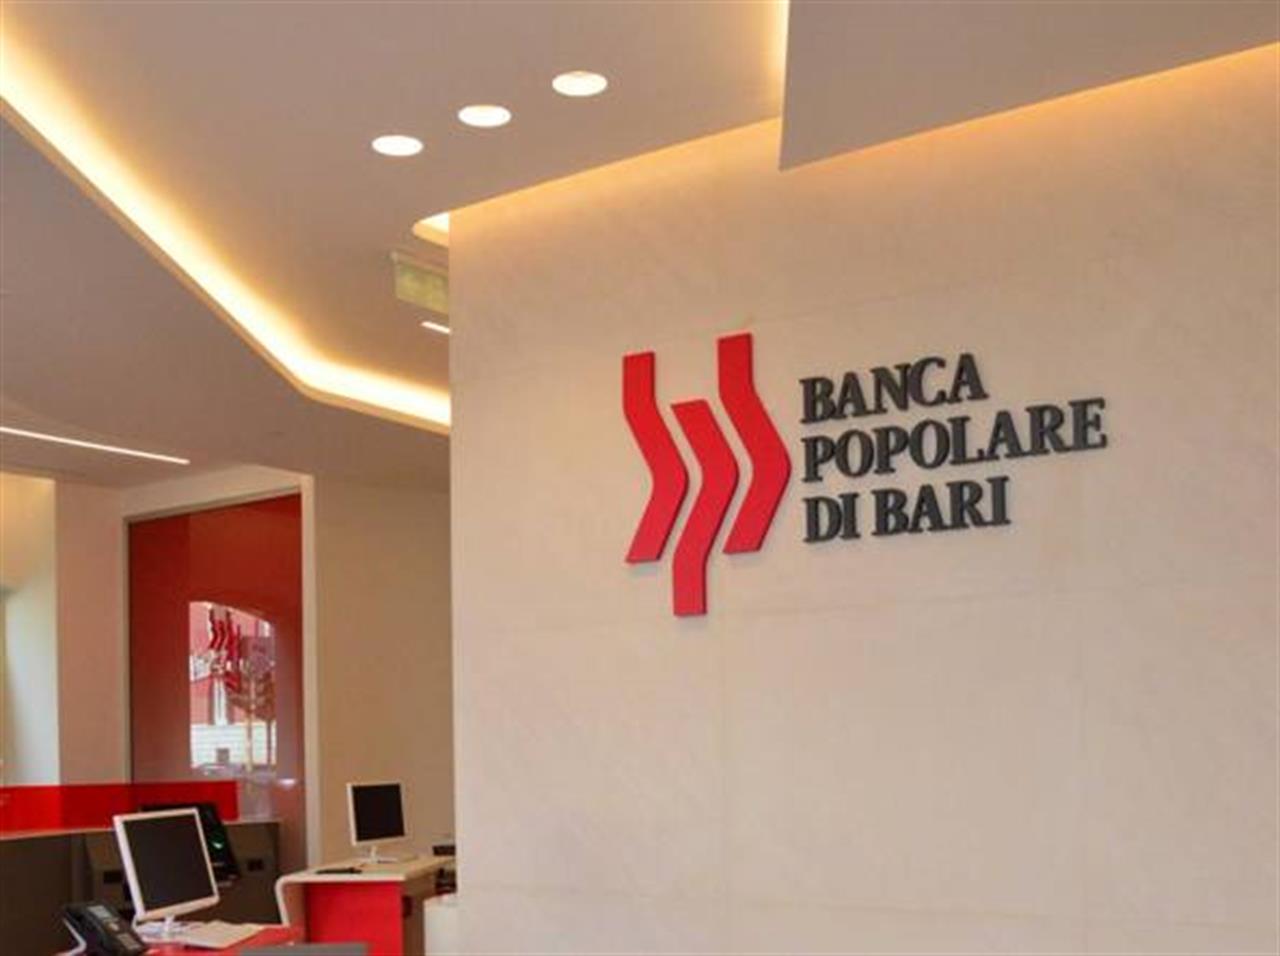 Banca Popolare di Bari prestiti voucher